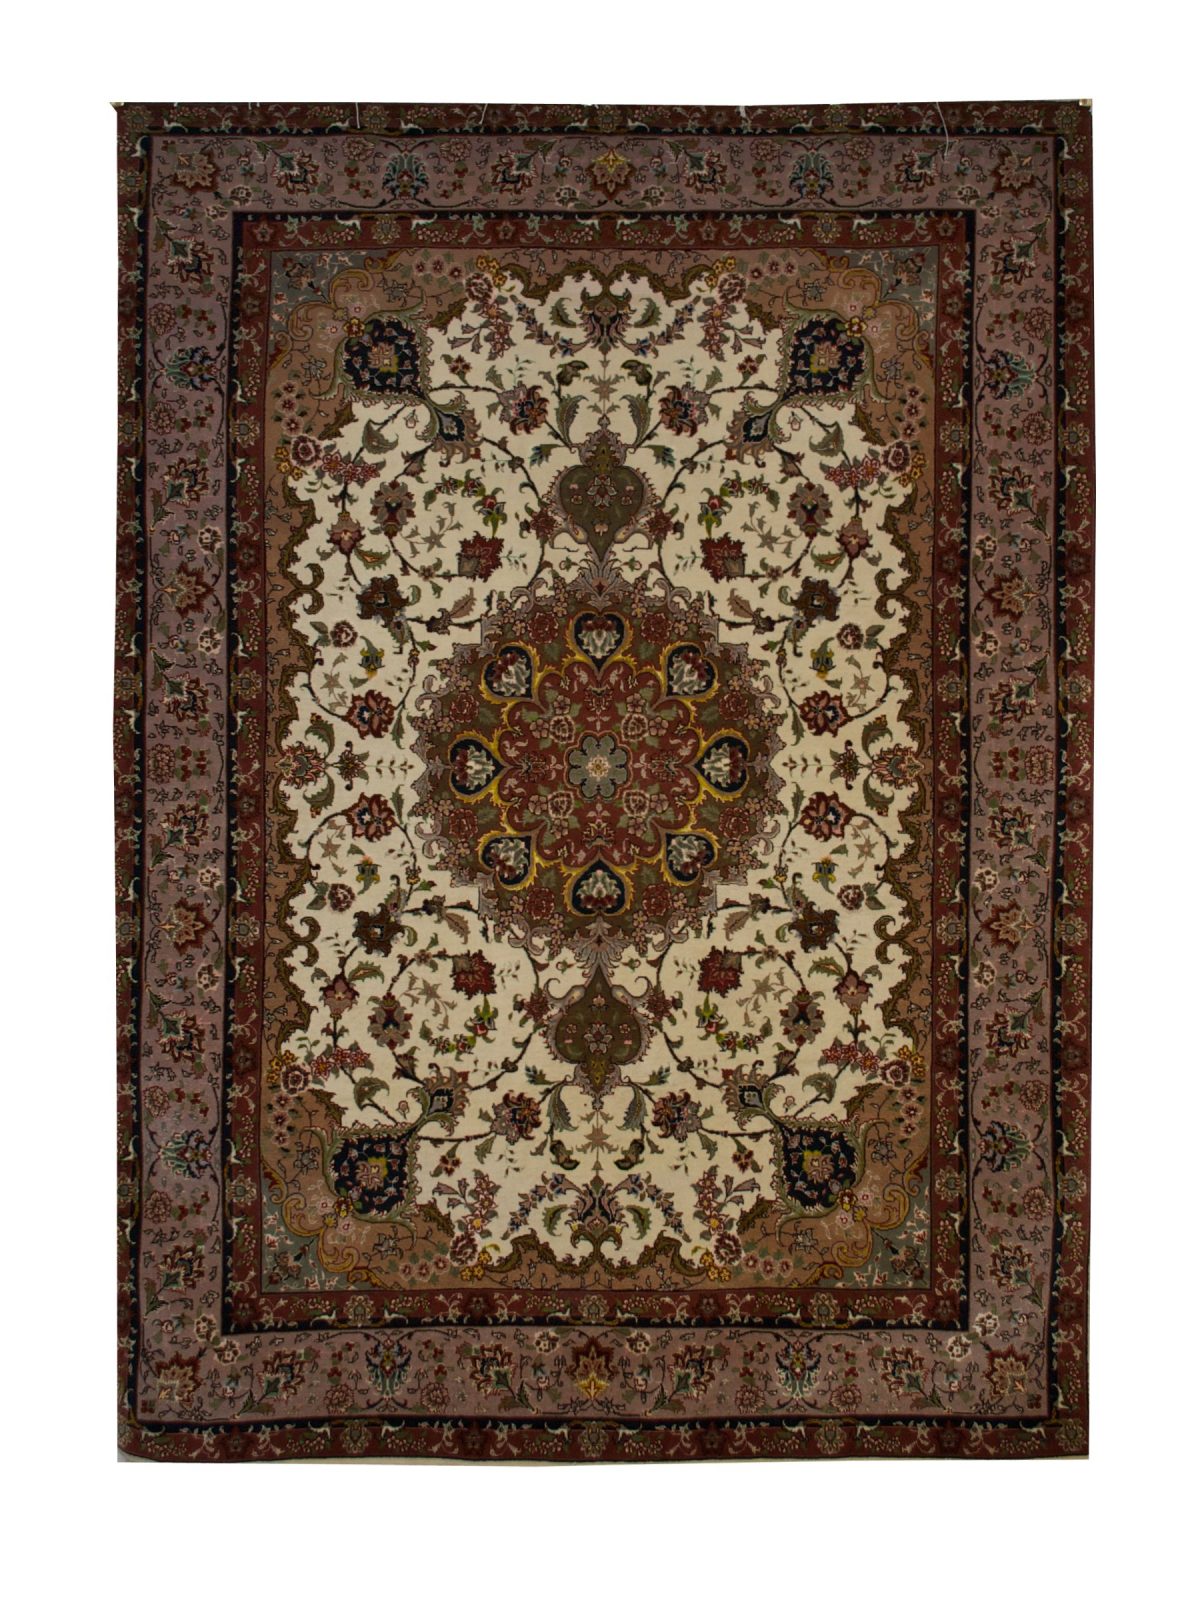 Persian Tabriz 4' 10" x 6' 10" - Shabahang Royal Carpet